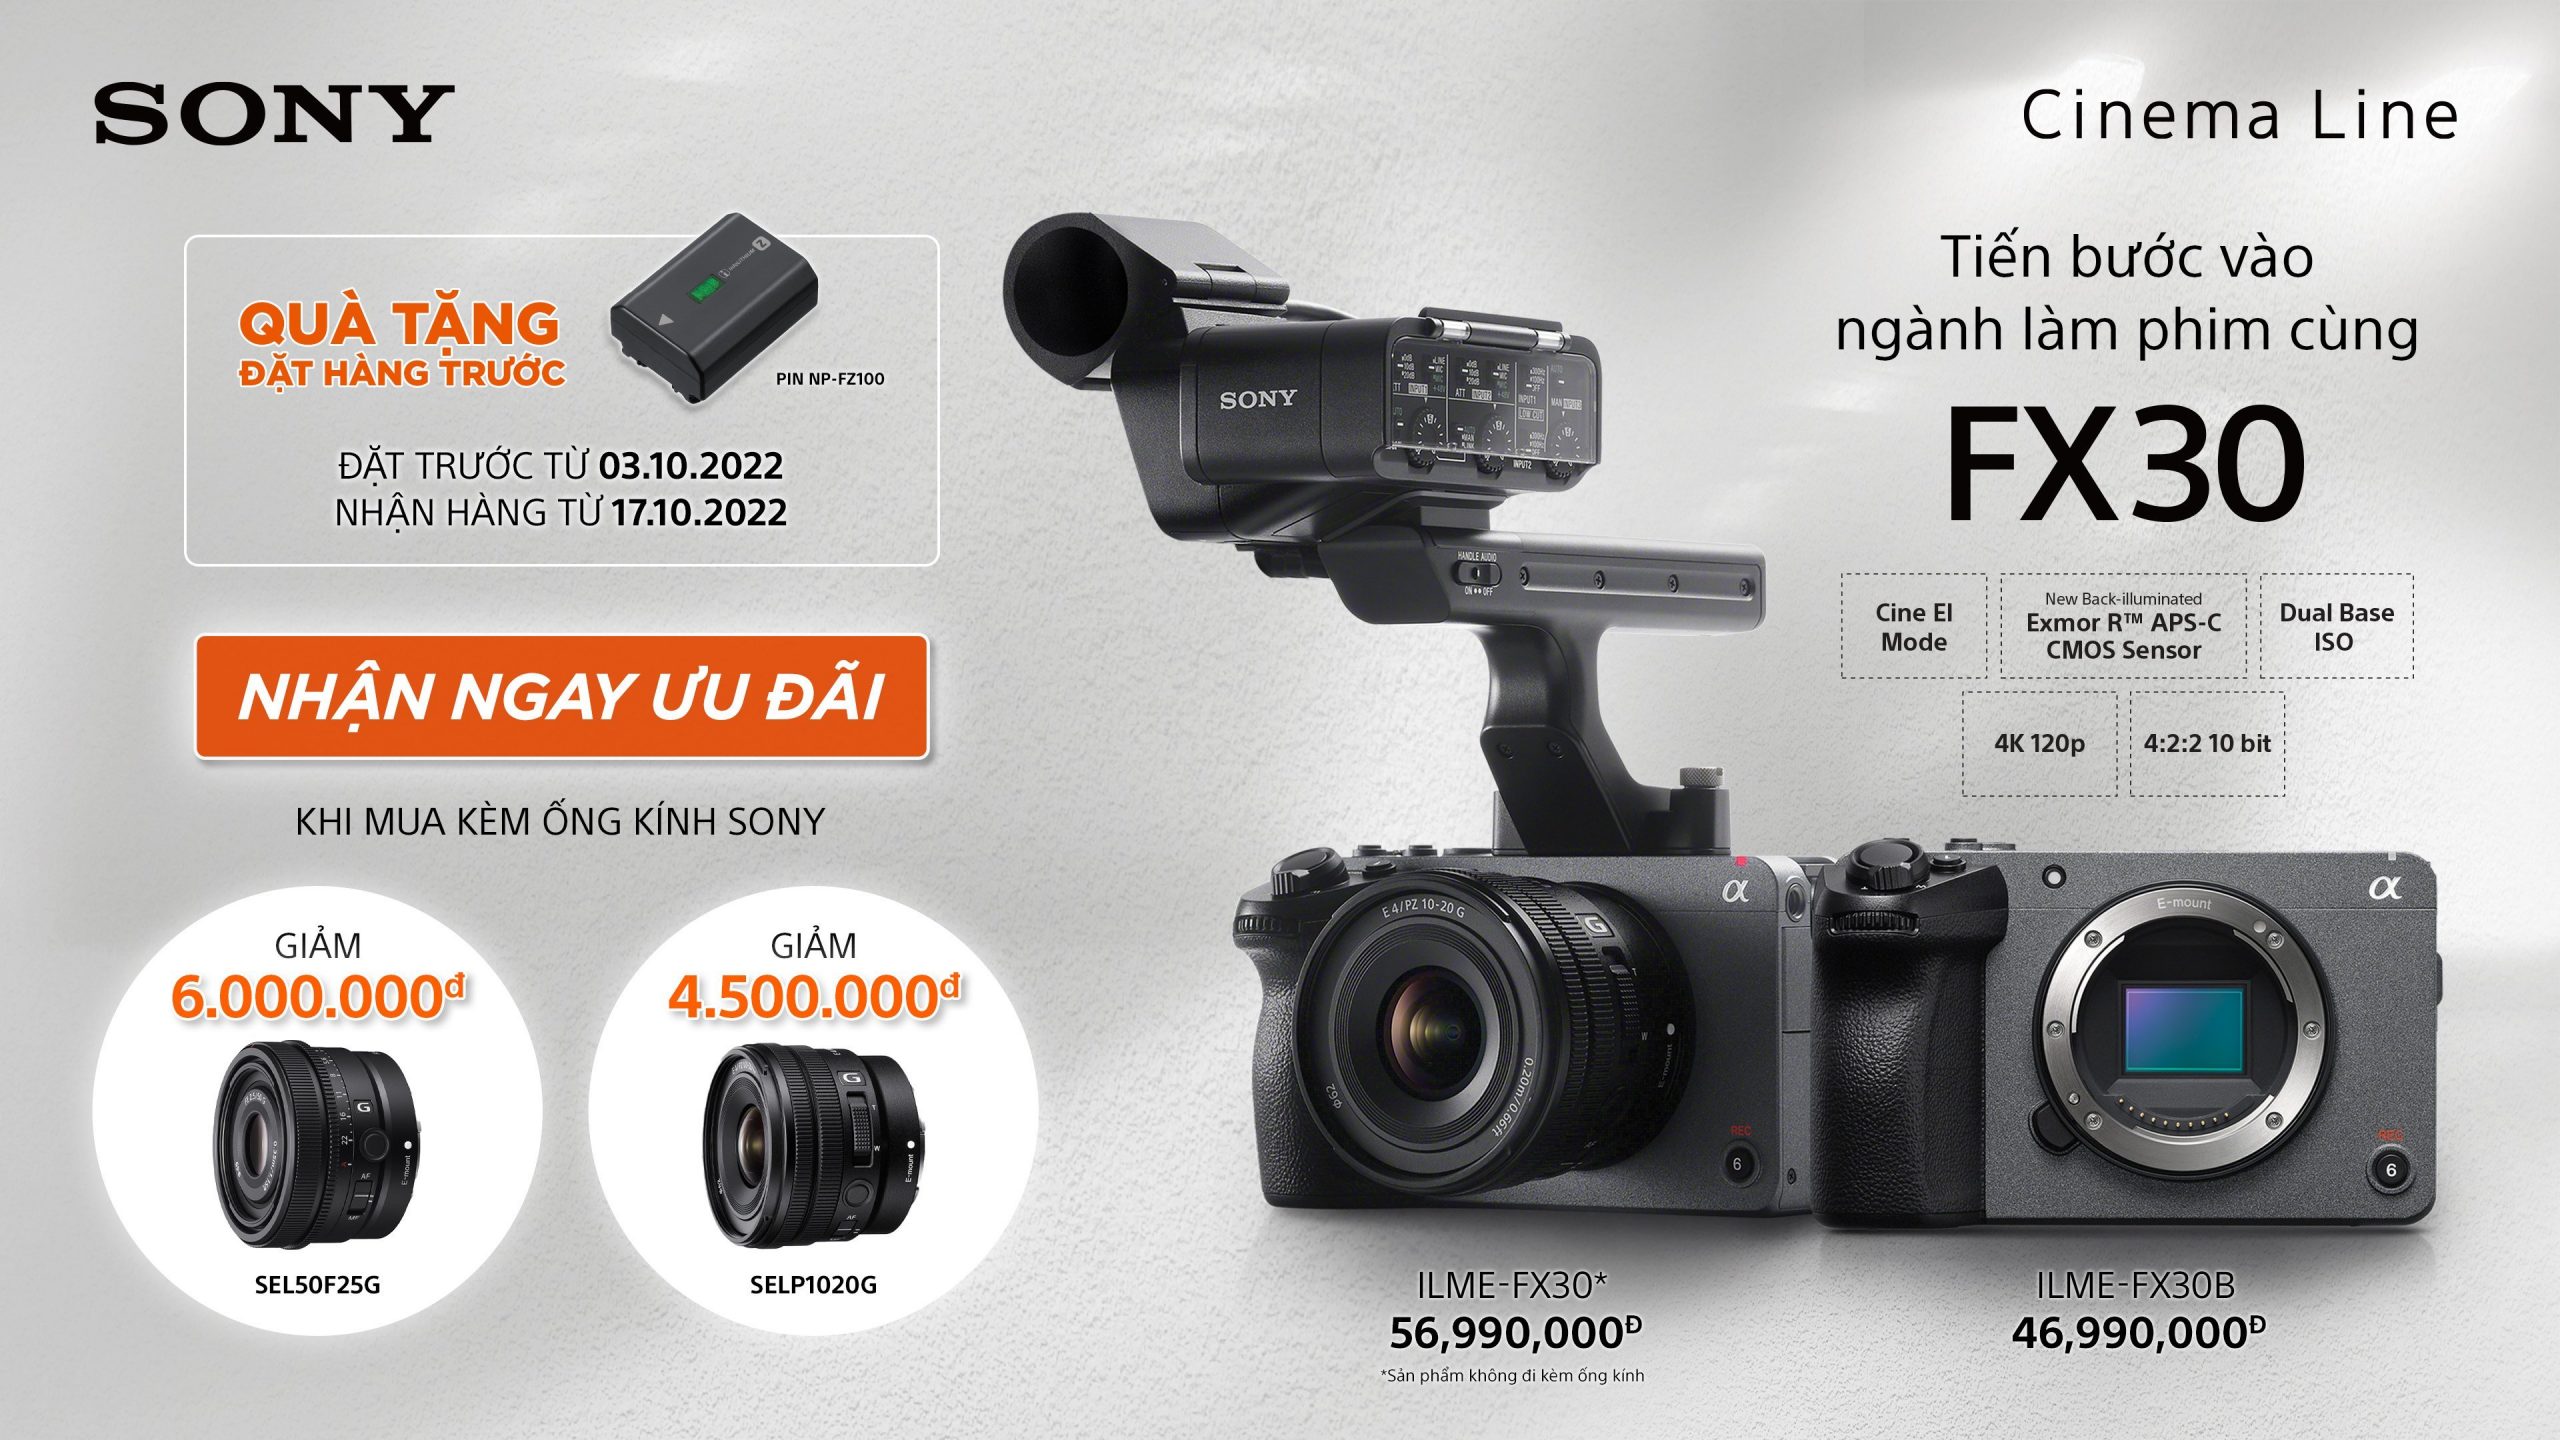 Sony mở rộng dòng sản phẩm Cinema Line với máy quay 4K Super 35 – Sony FX30